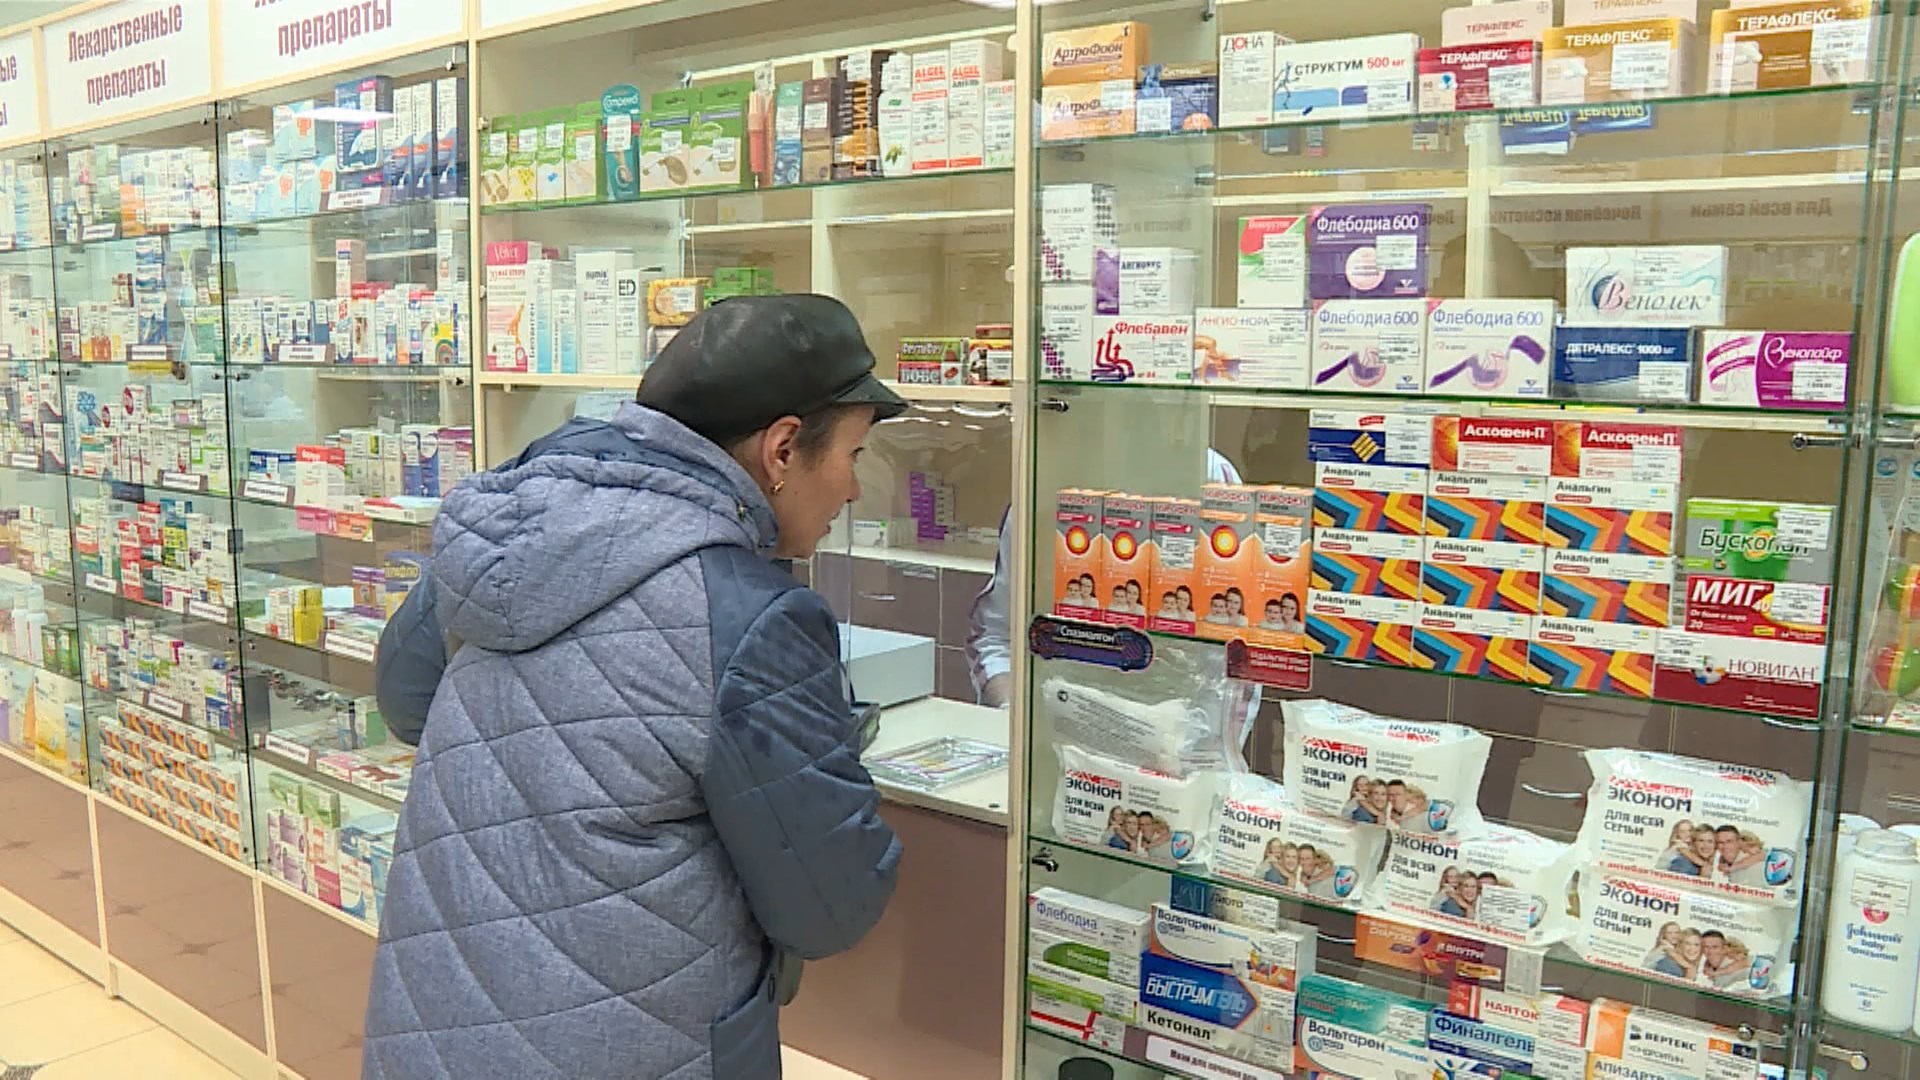 Неснижаемый лекарственный запас для льготников обновляется на Костромской областной аптечной базе